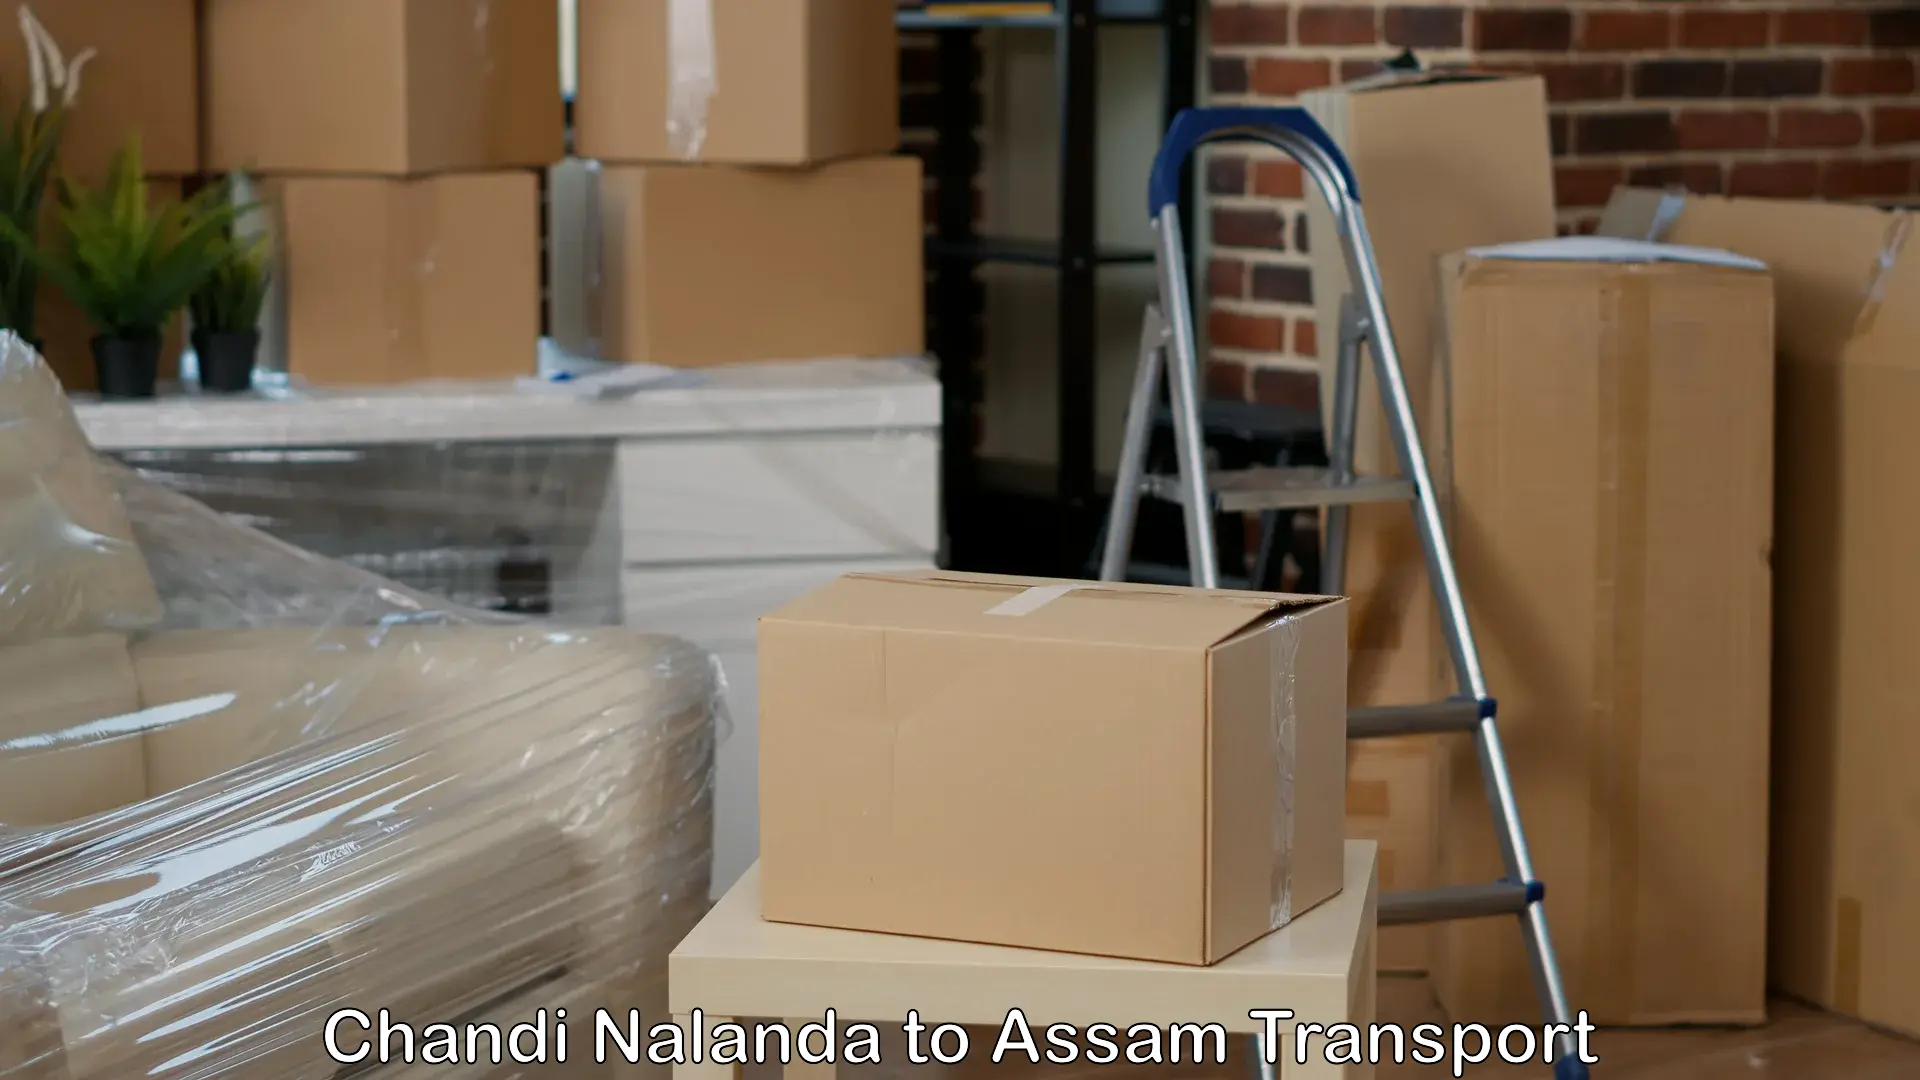 Truck transport companies in India Chandi Nalanda to Biswanath